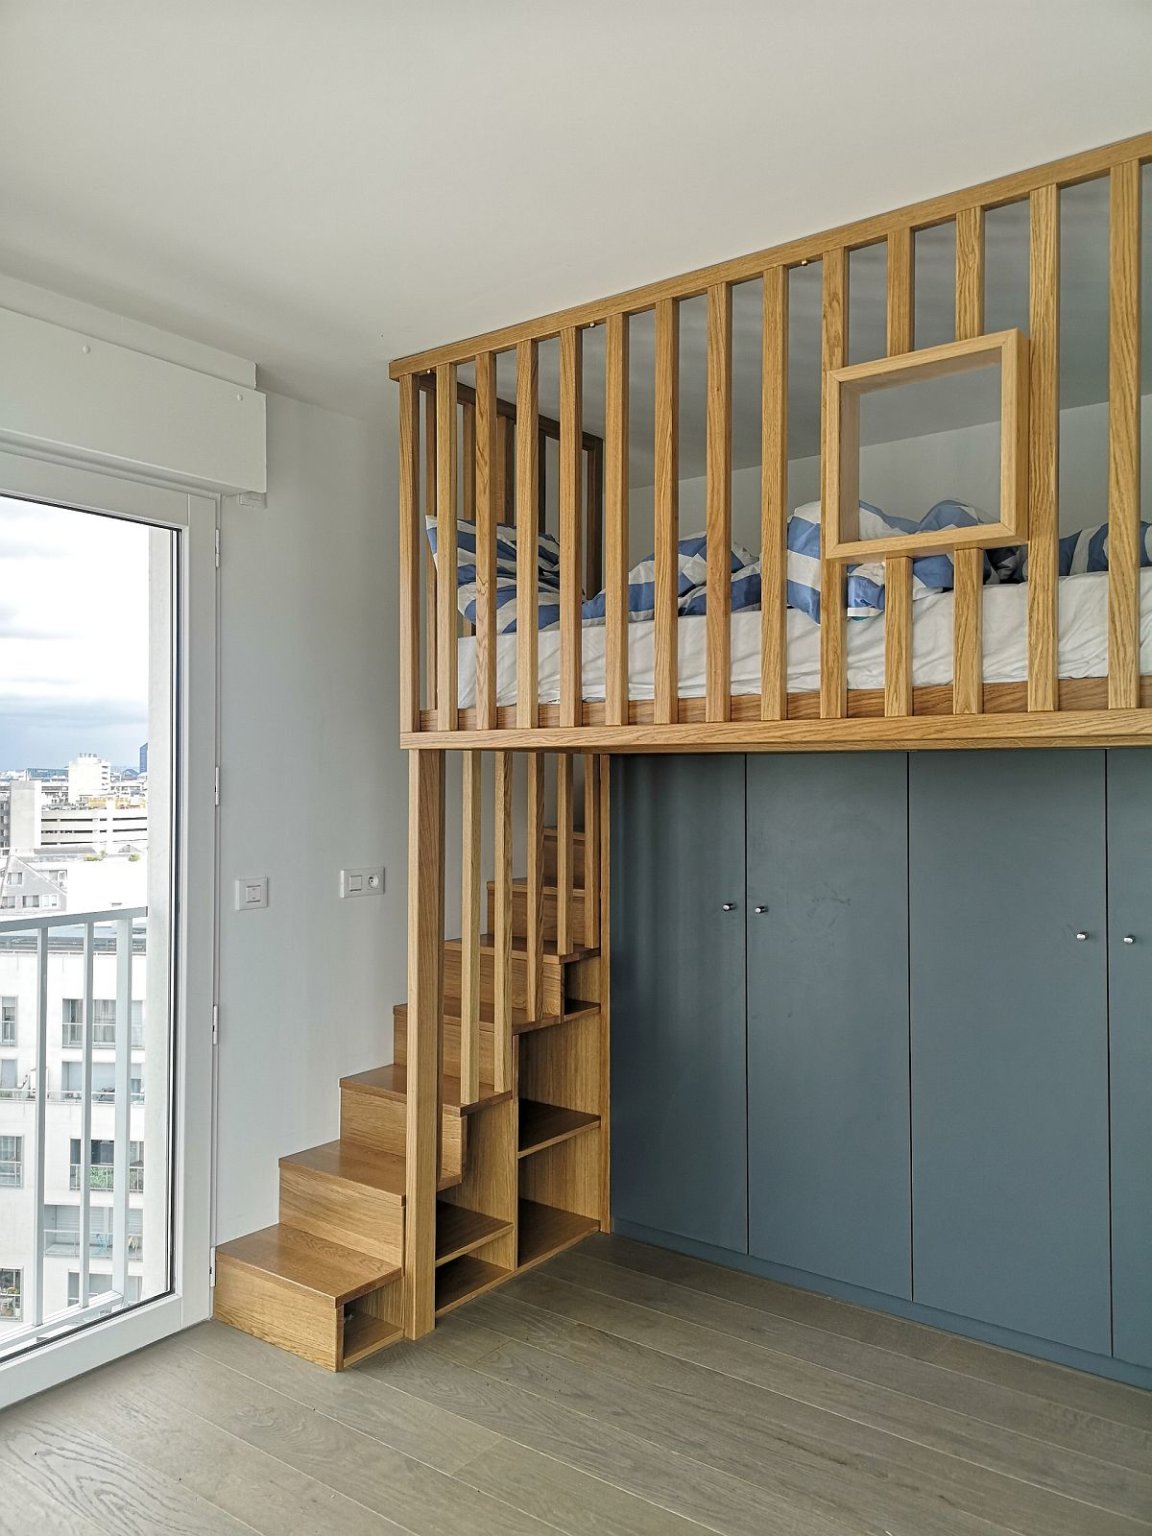 giường tầng với cầu thang gỗ đi lên, dưới giường là tủ quần áo màu xám